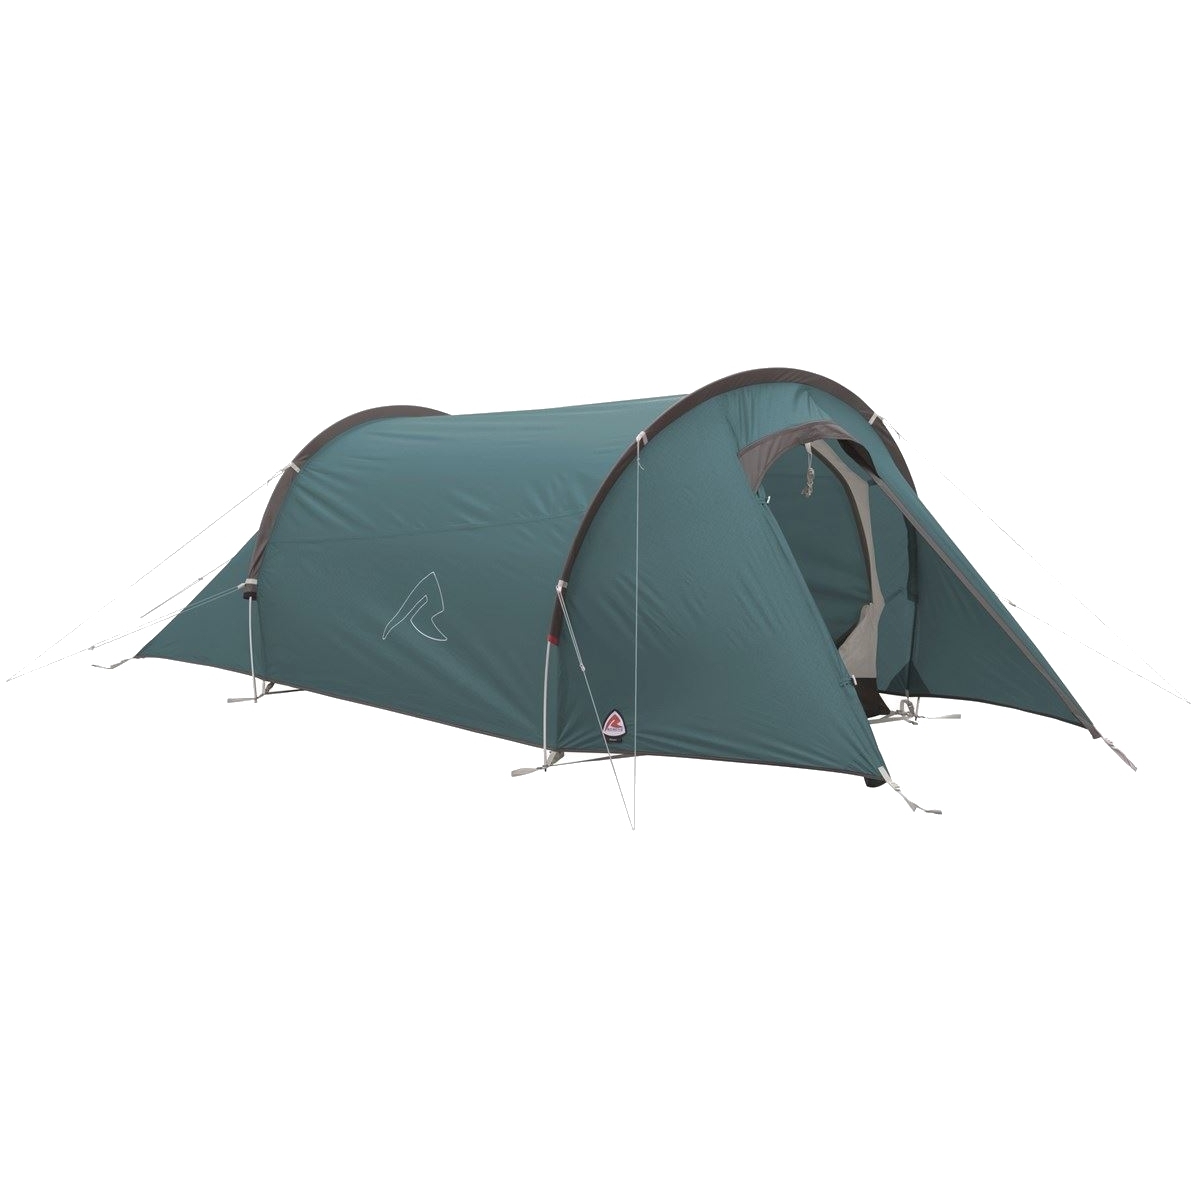 Productfoto van Robens Arch 2 Tent - Blauw